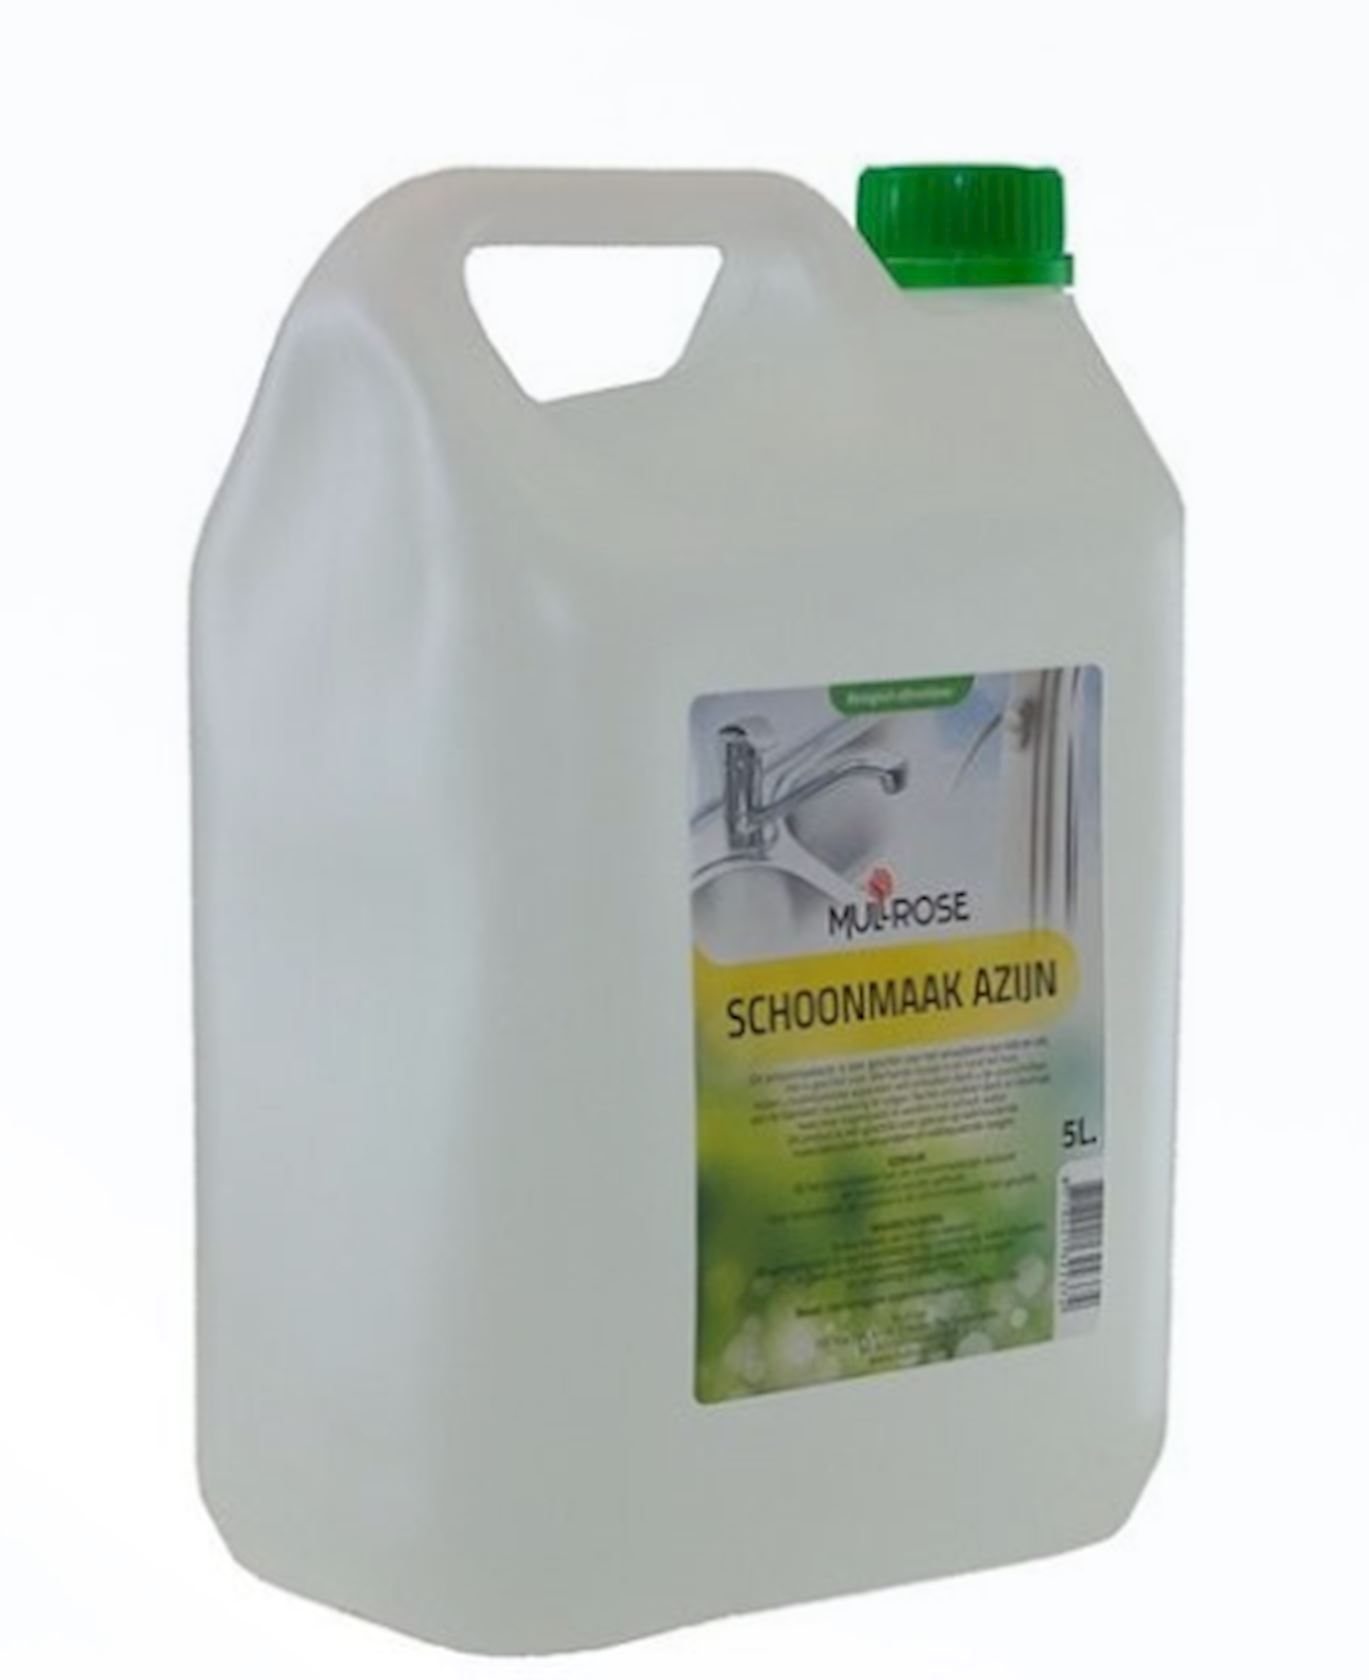 Schoonmaakazijn-5-liter